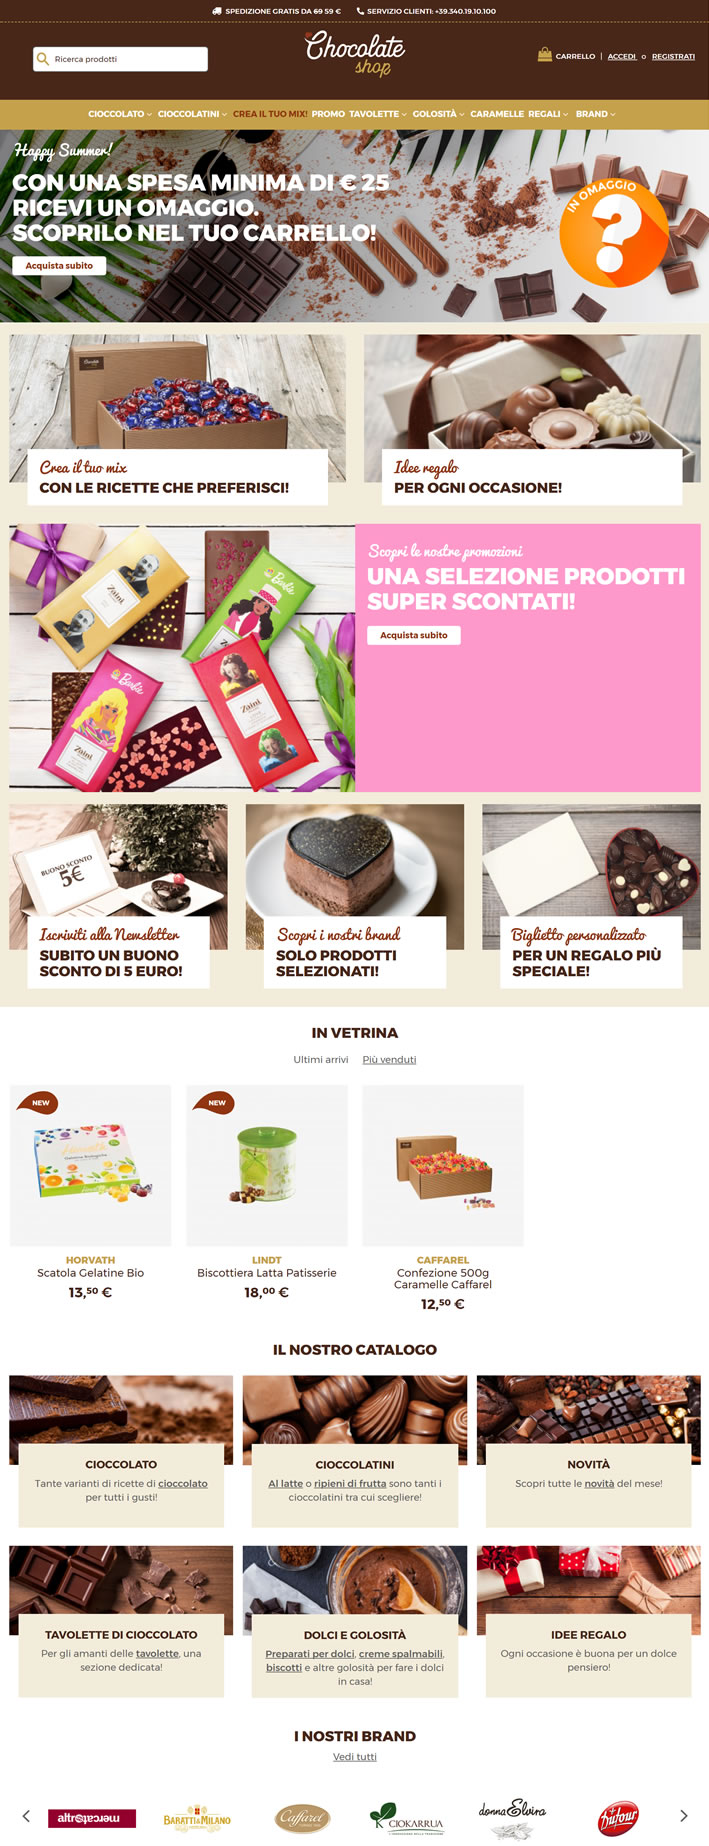 意大利巧克力店：Chocolate Shop 意大利購物網站 MeetKK-MeetKK